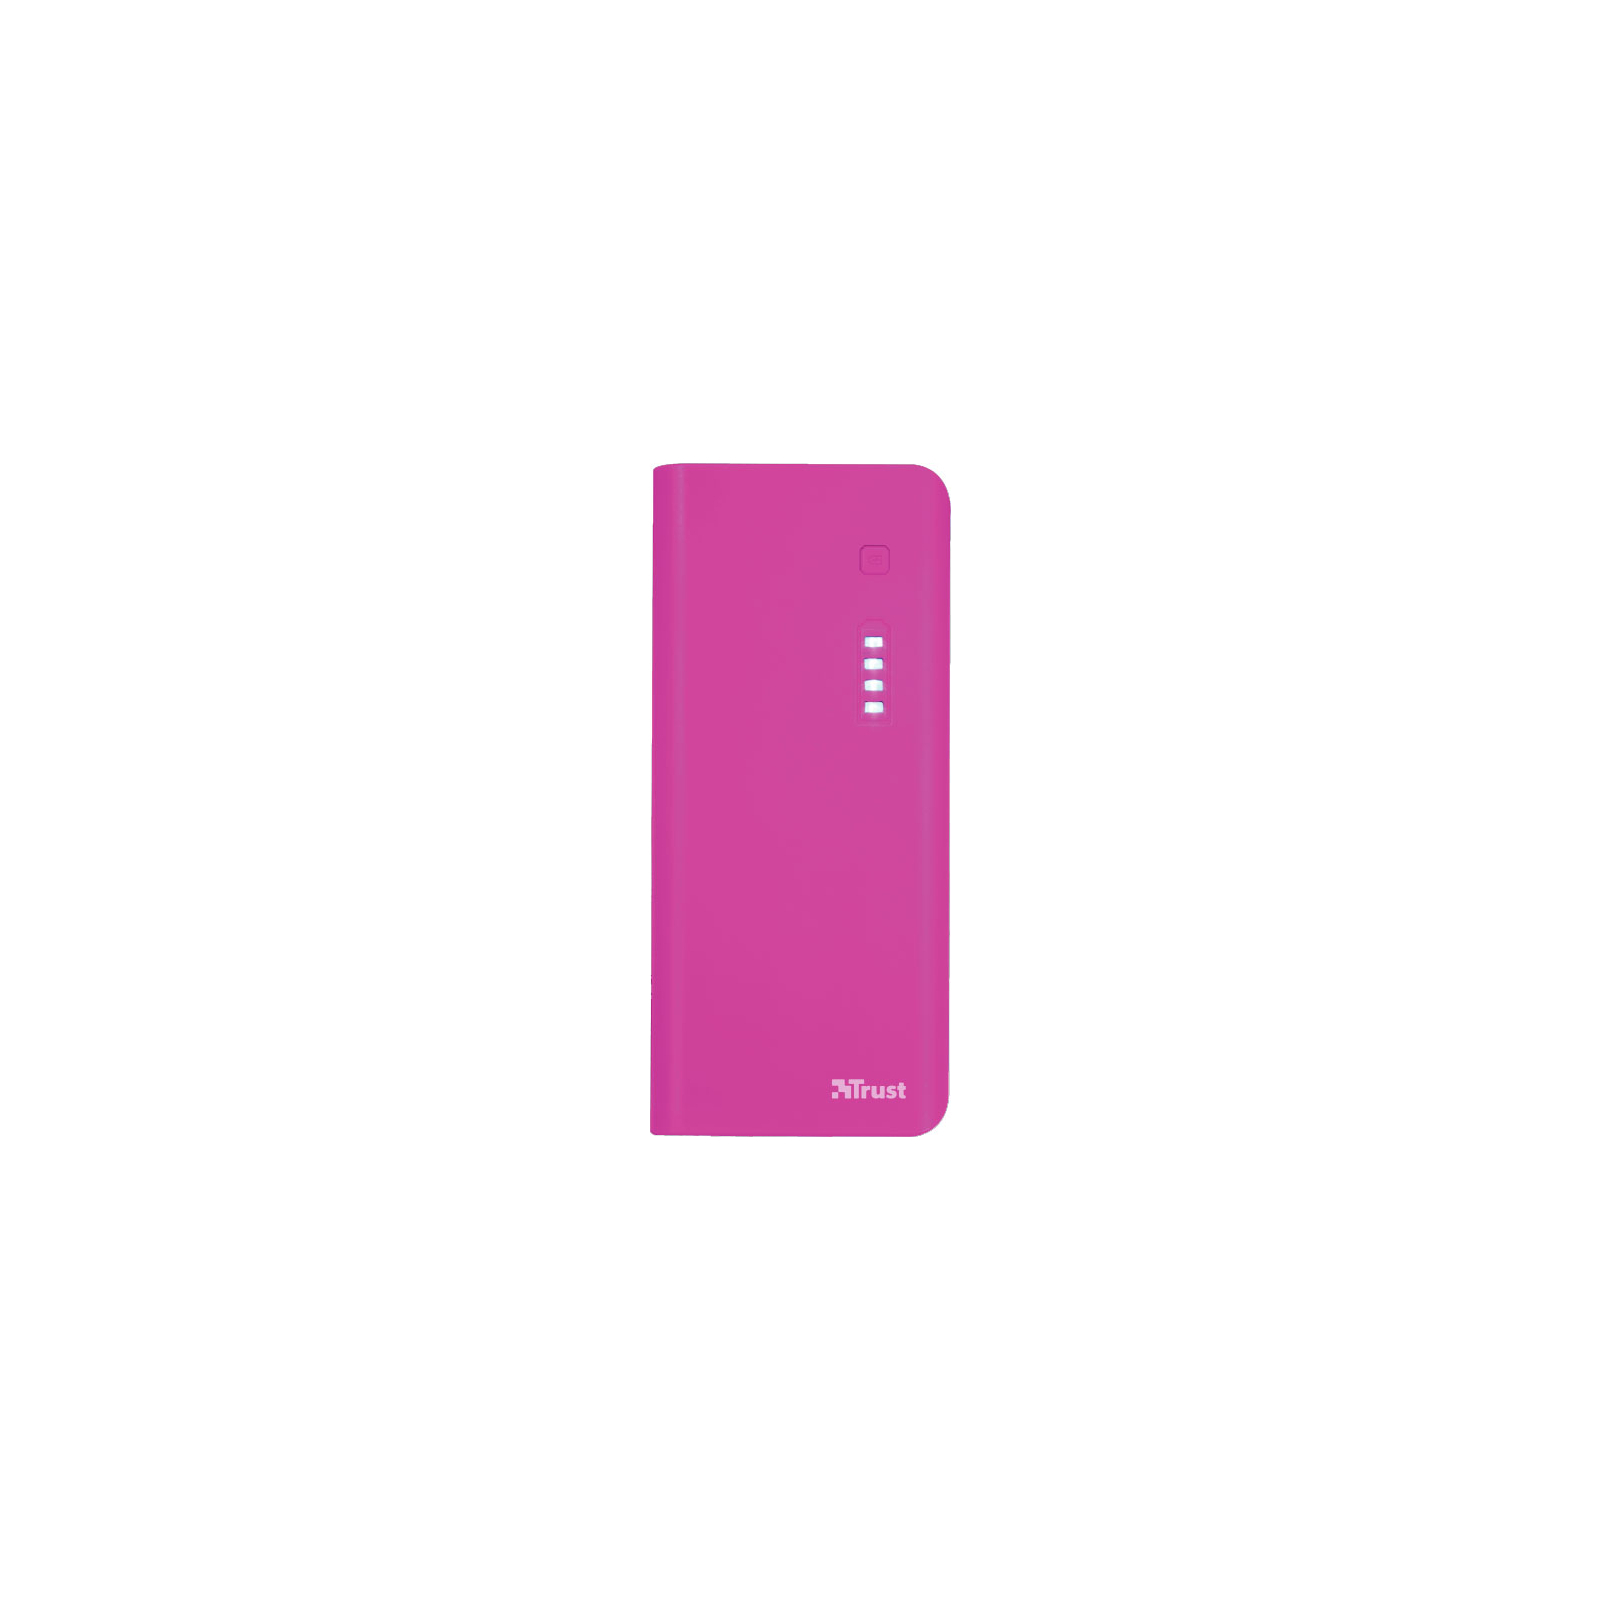 Батарея универсальная Trust Primo 10000 Sum-Pink (22749)